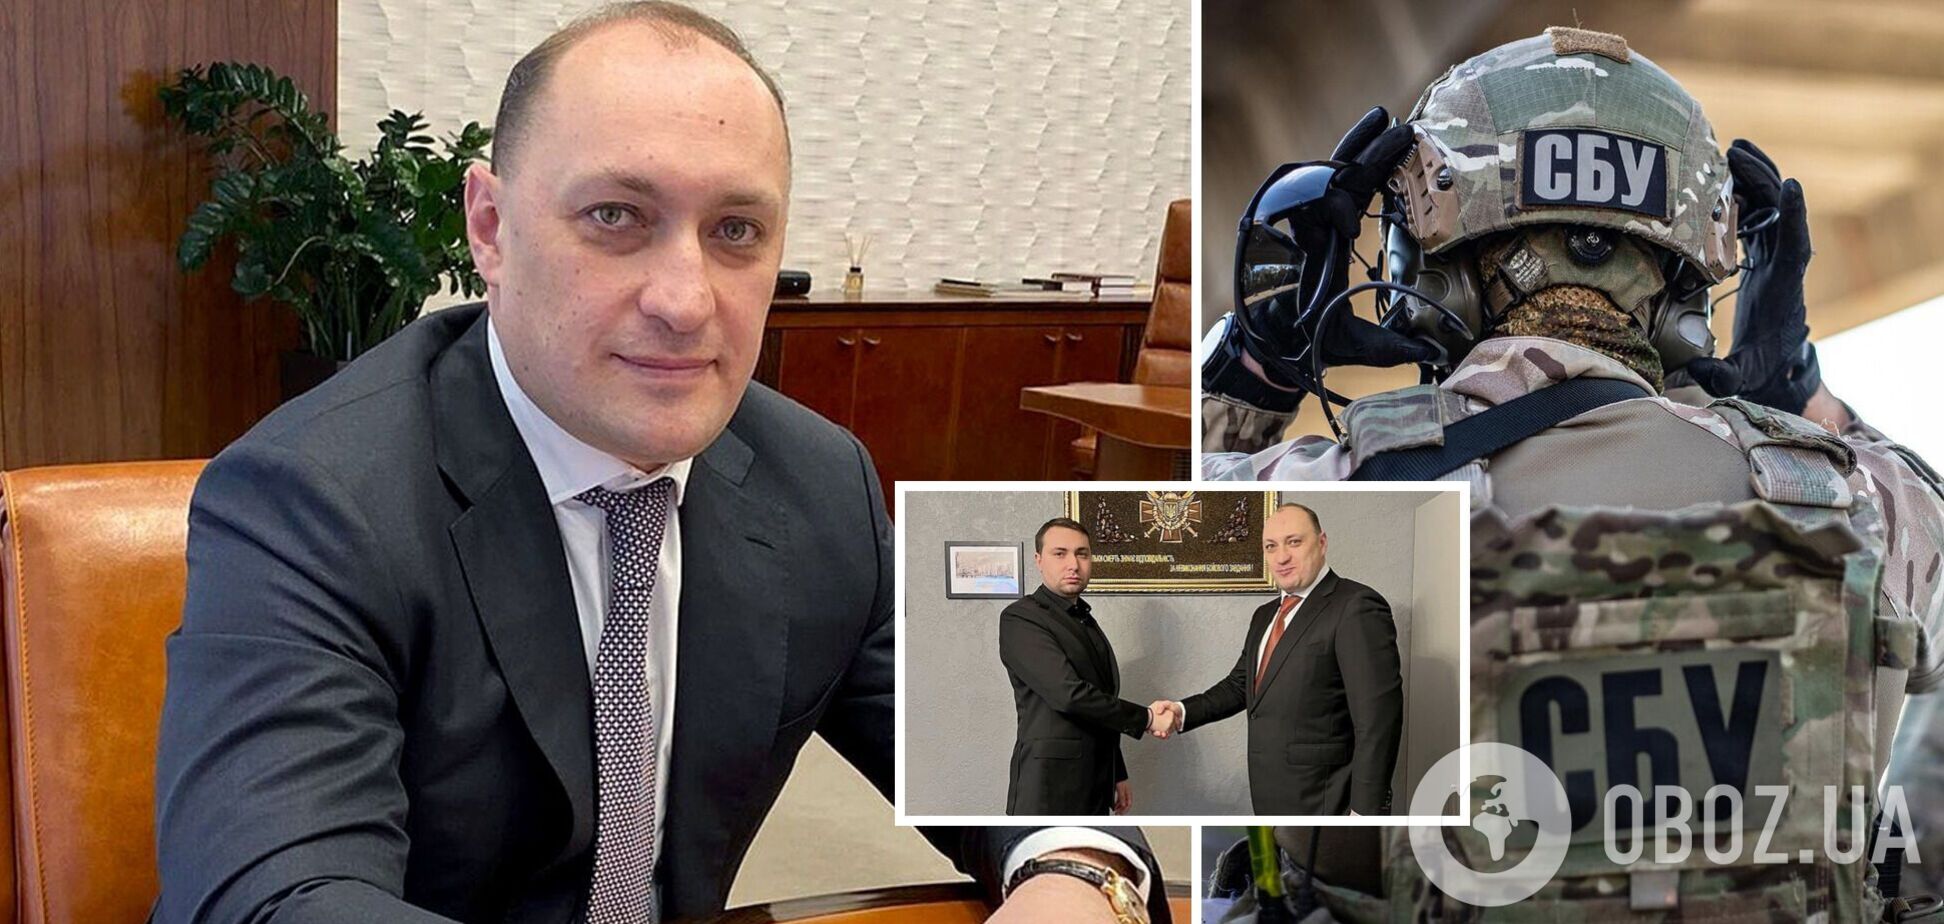 Участник переговоров с РФ, убитый СБУ, предупредил Буданова о планах Путина взять Киев – WSJ